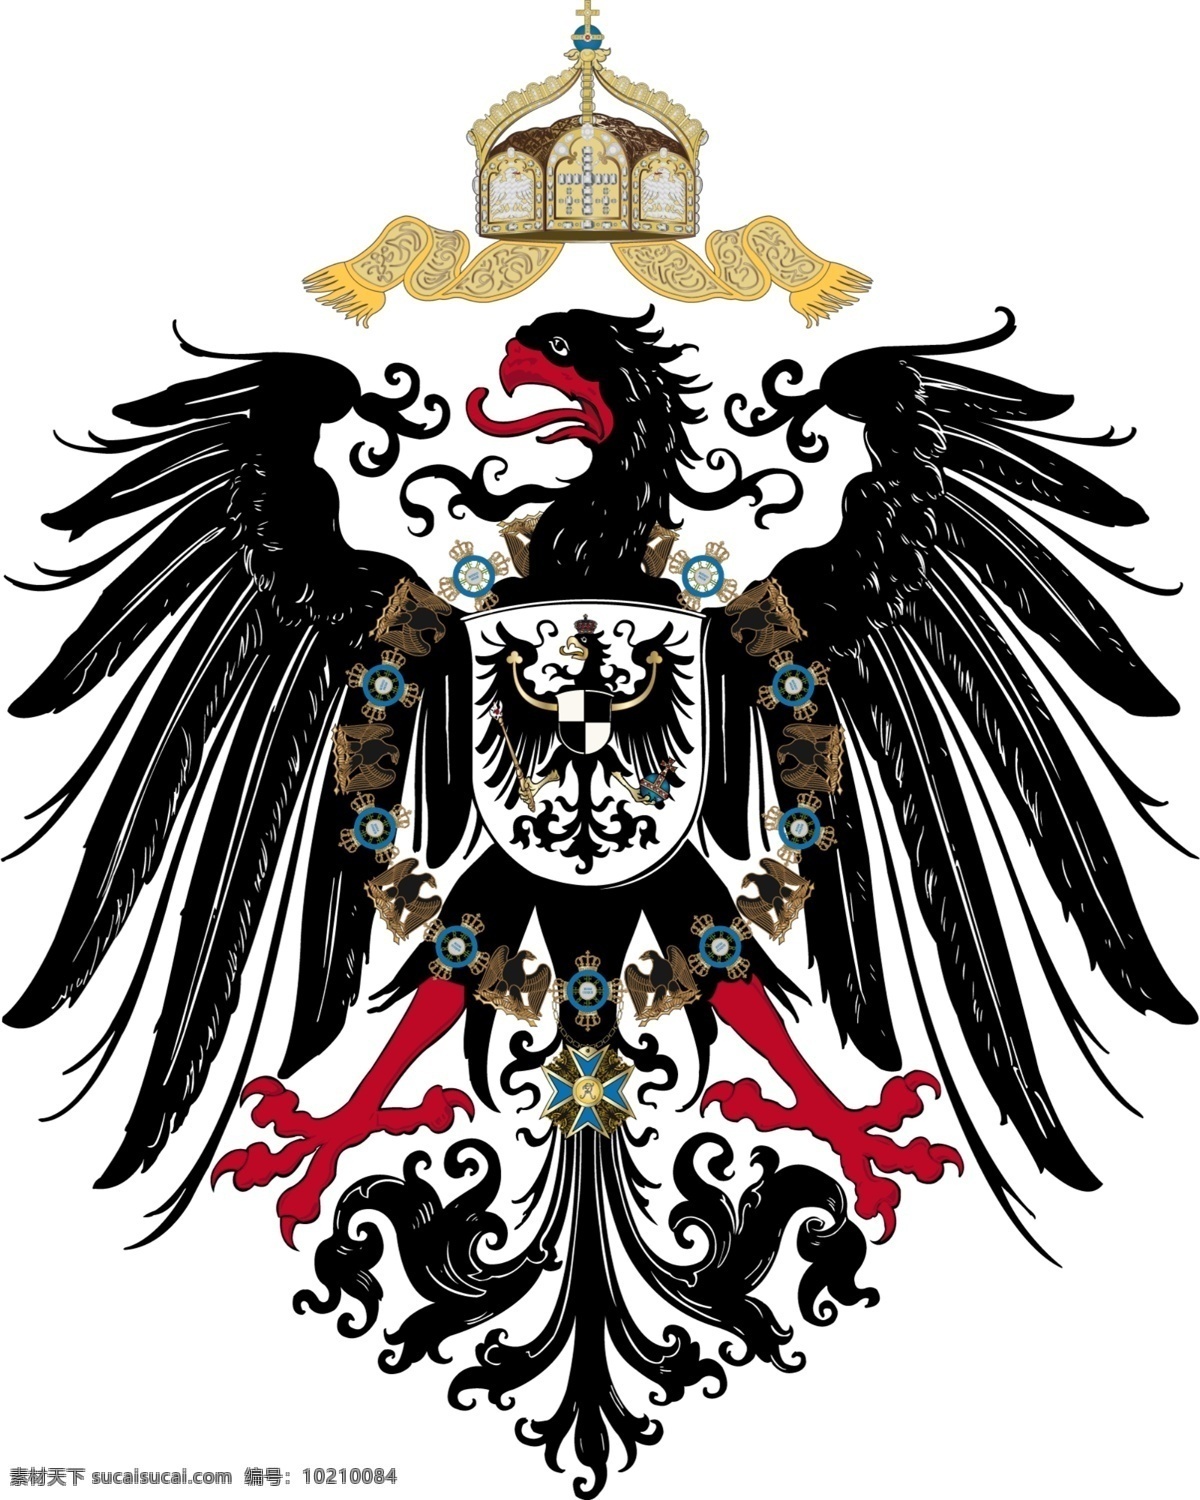 普鲁士 普鲁士国徽 徽章 德意志 德国 霍亨索伦王朝 军国主义 鹰徽 分层